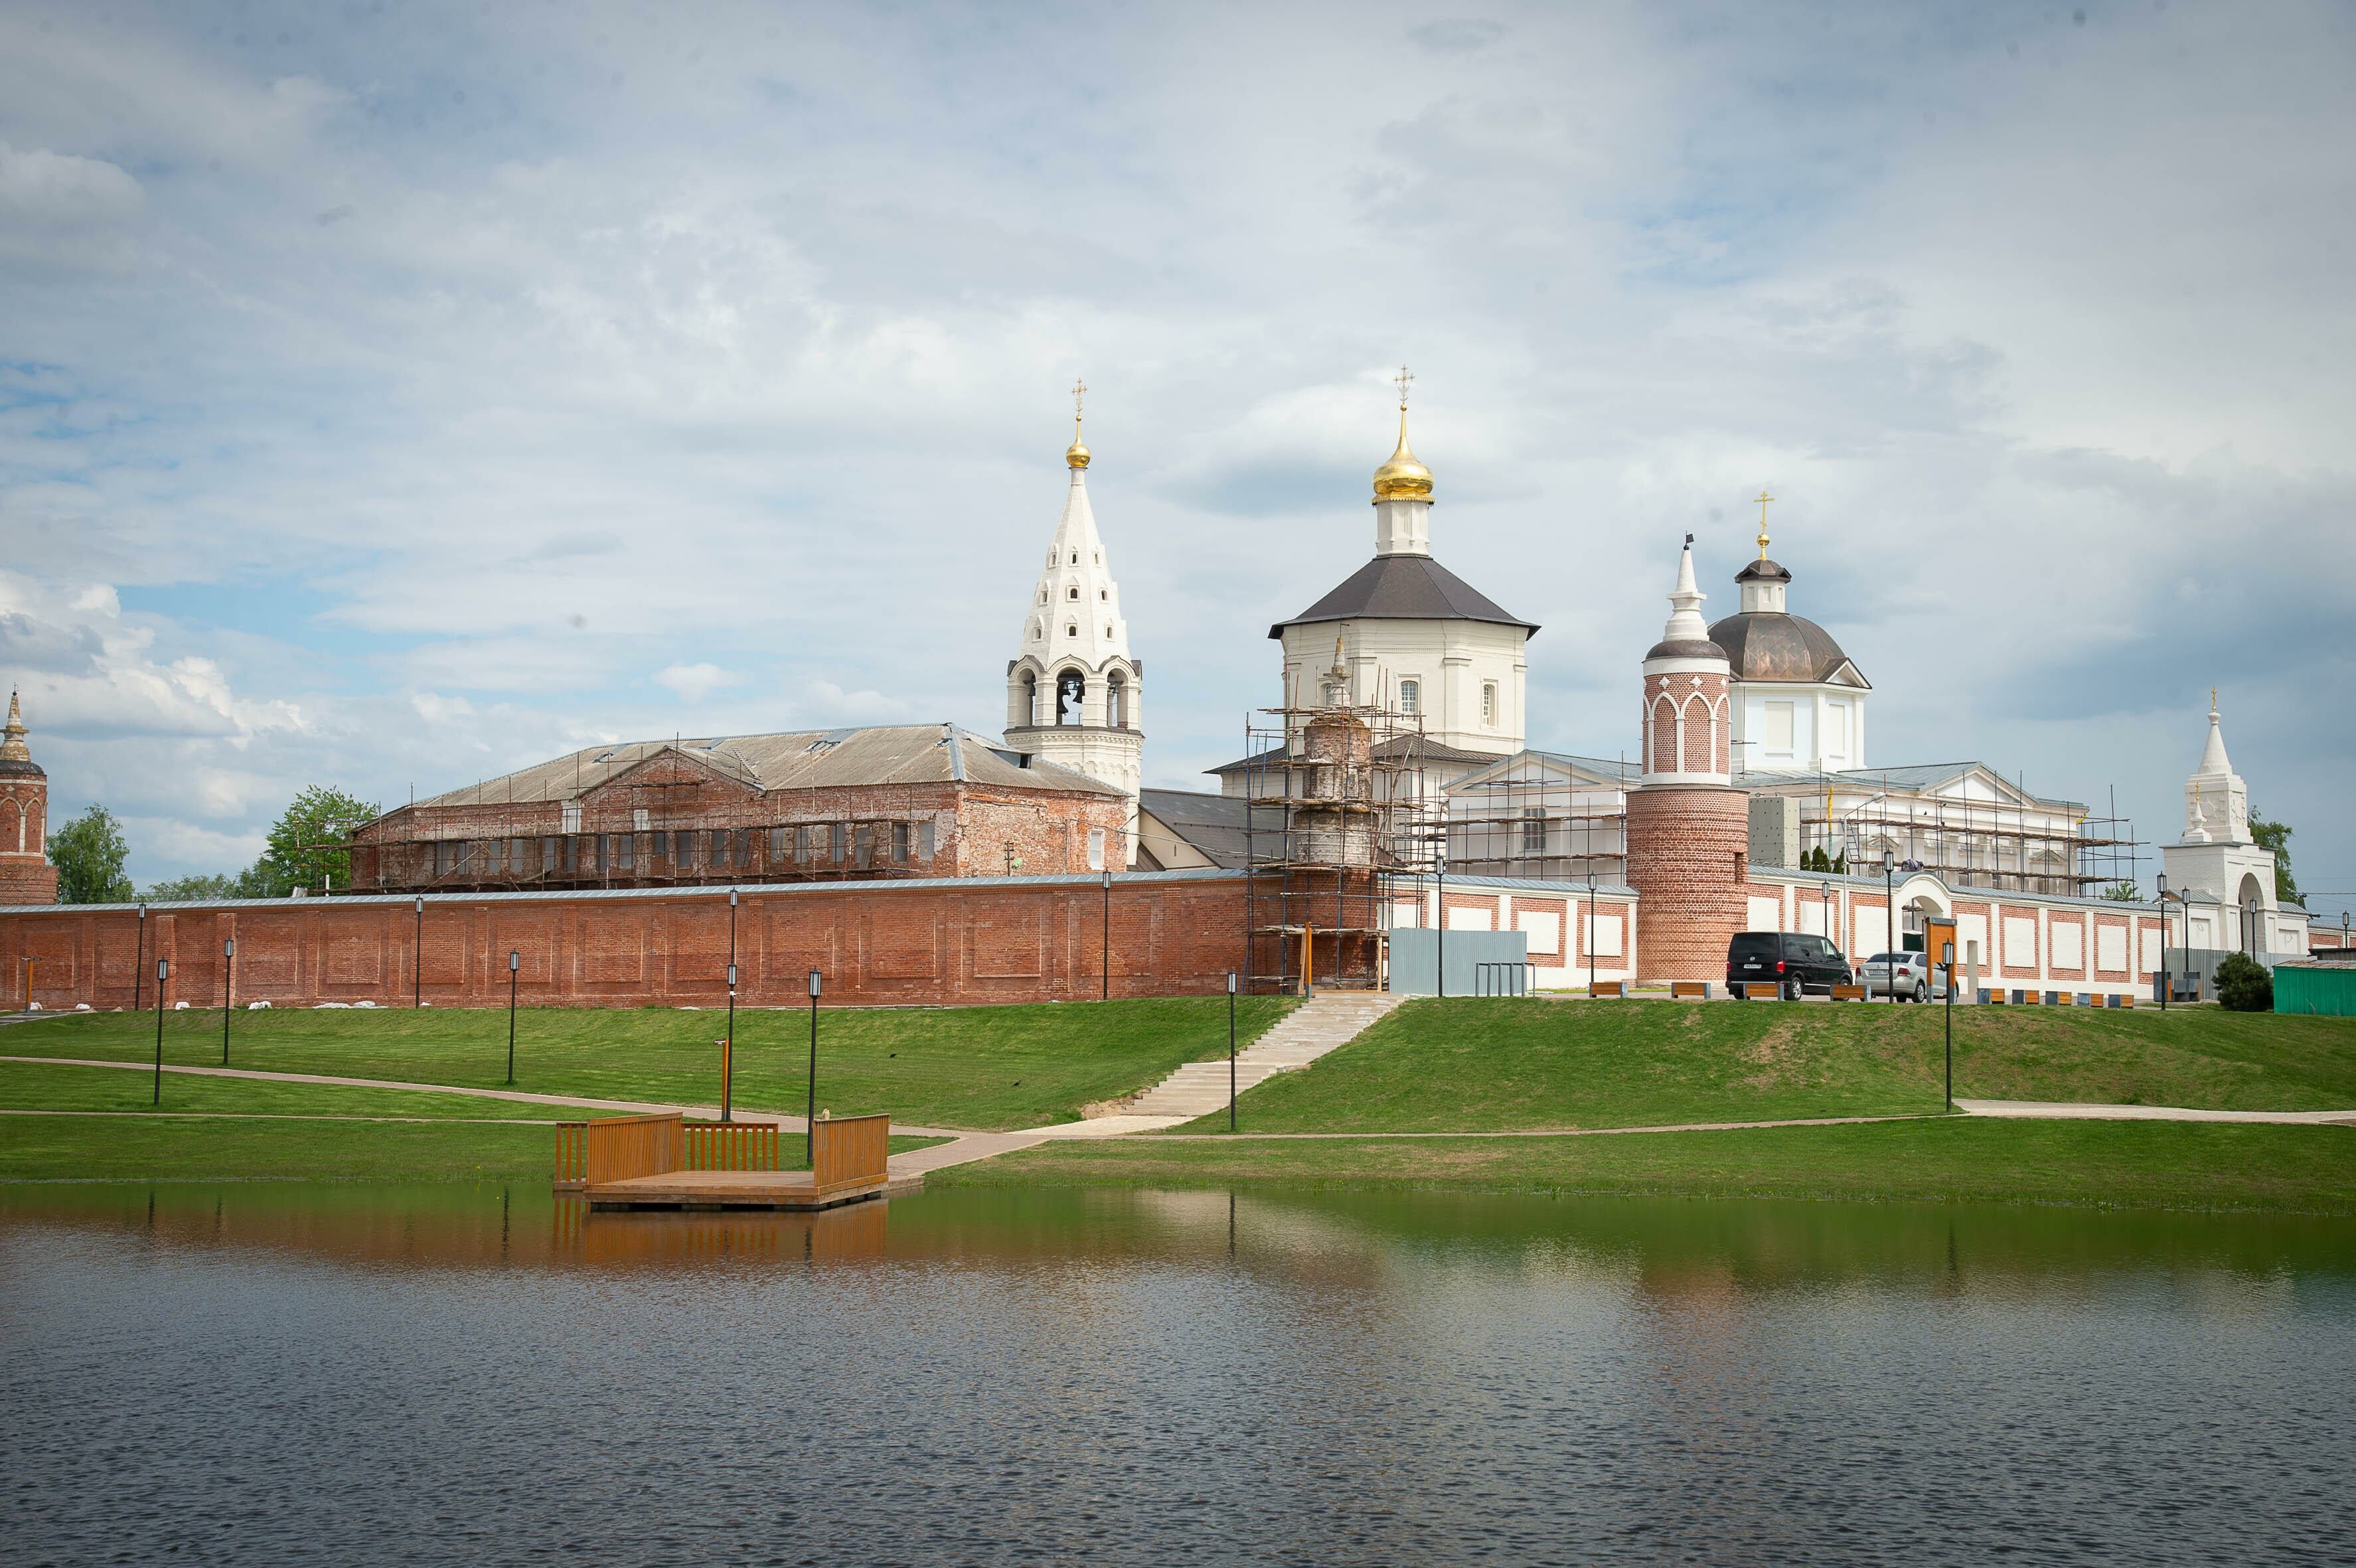 Объект культурного наследия федерального значения в Коломне получил разрешение на реставрацию